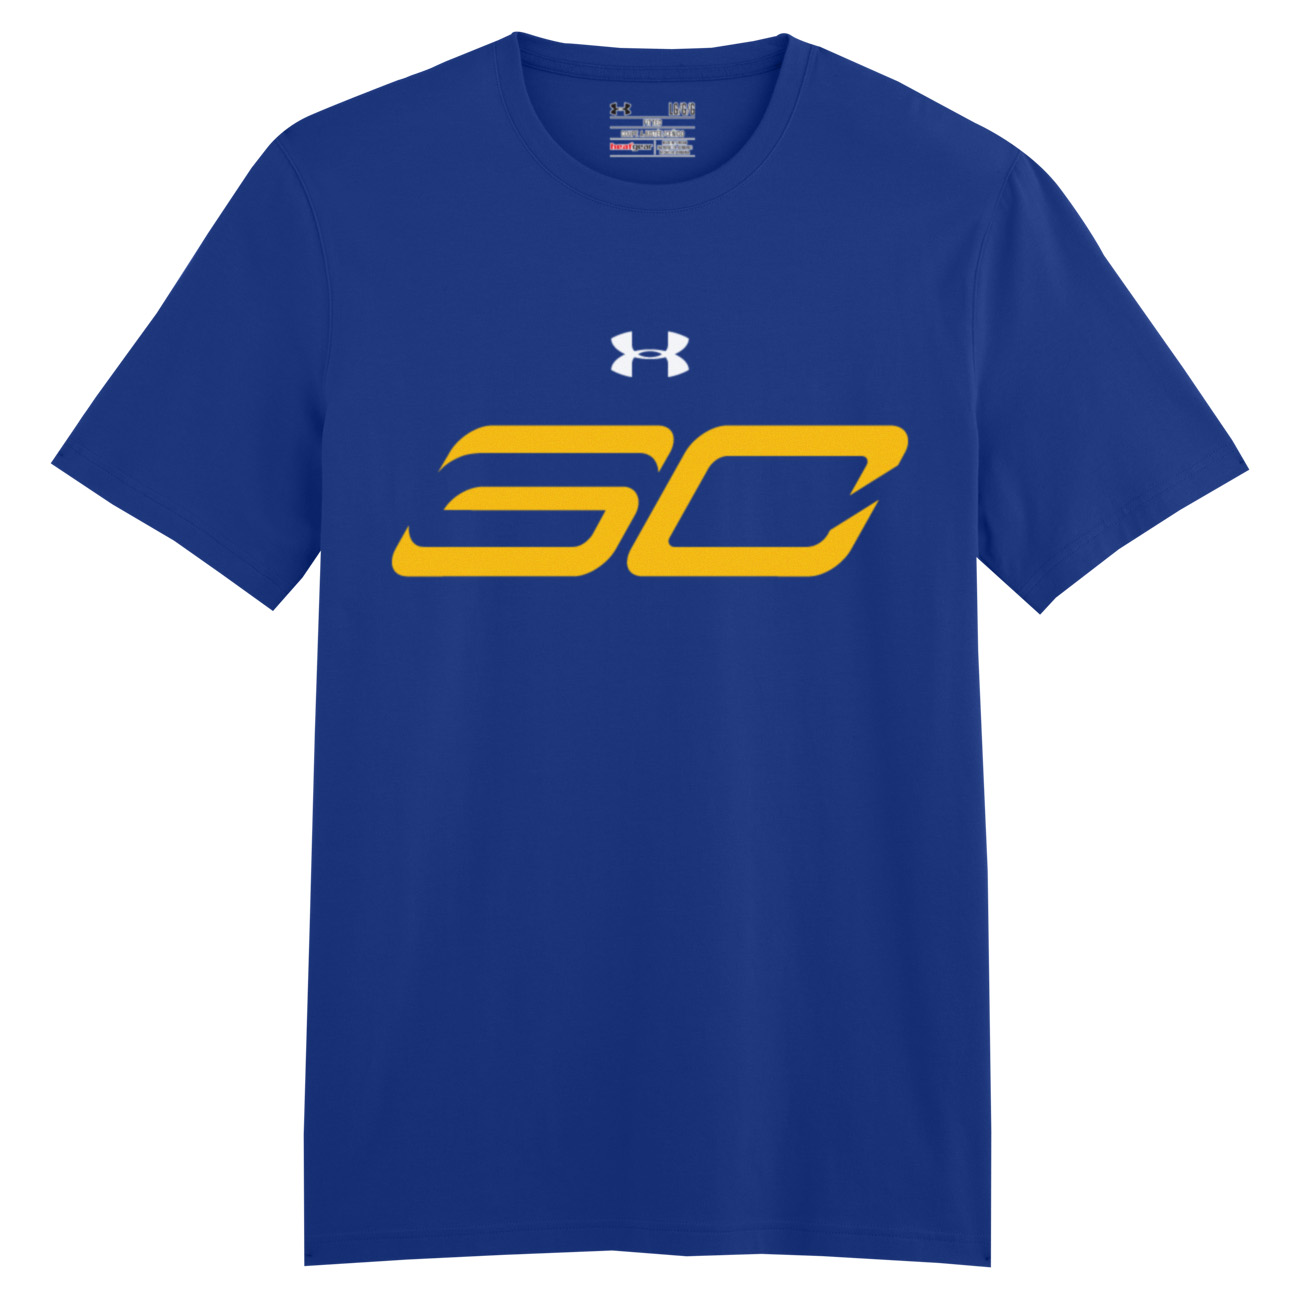 sc30 t shirt